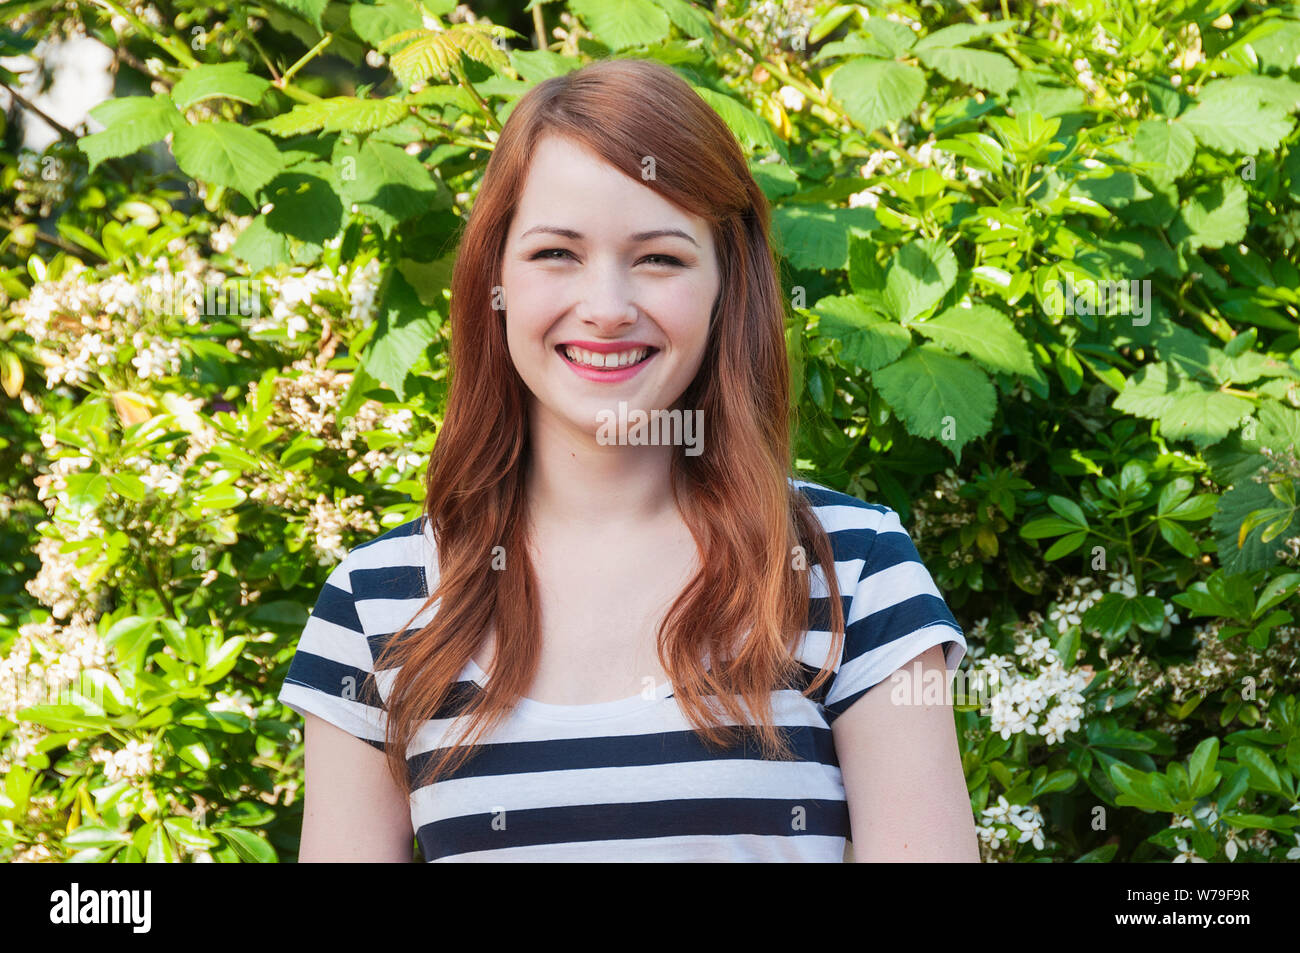 Una giovane donna con i capelli rossi sorridente alla fotocamera. Foto Stock